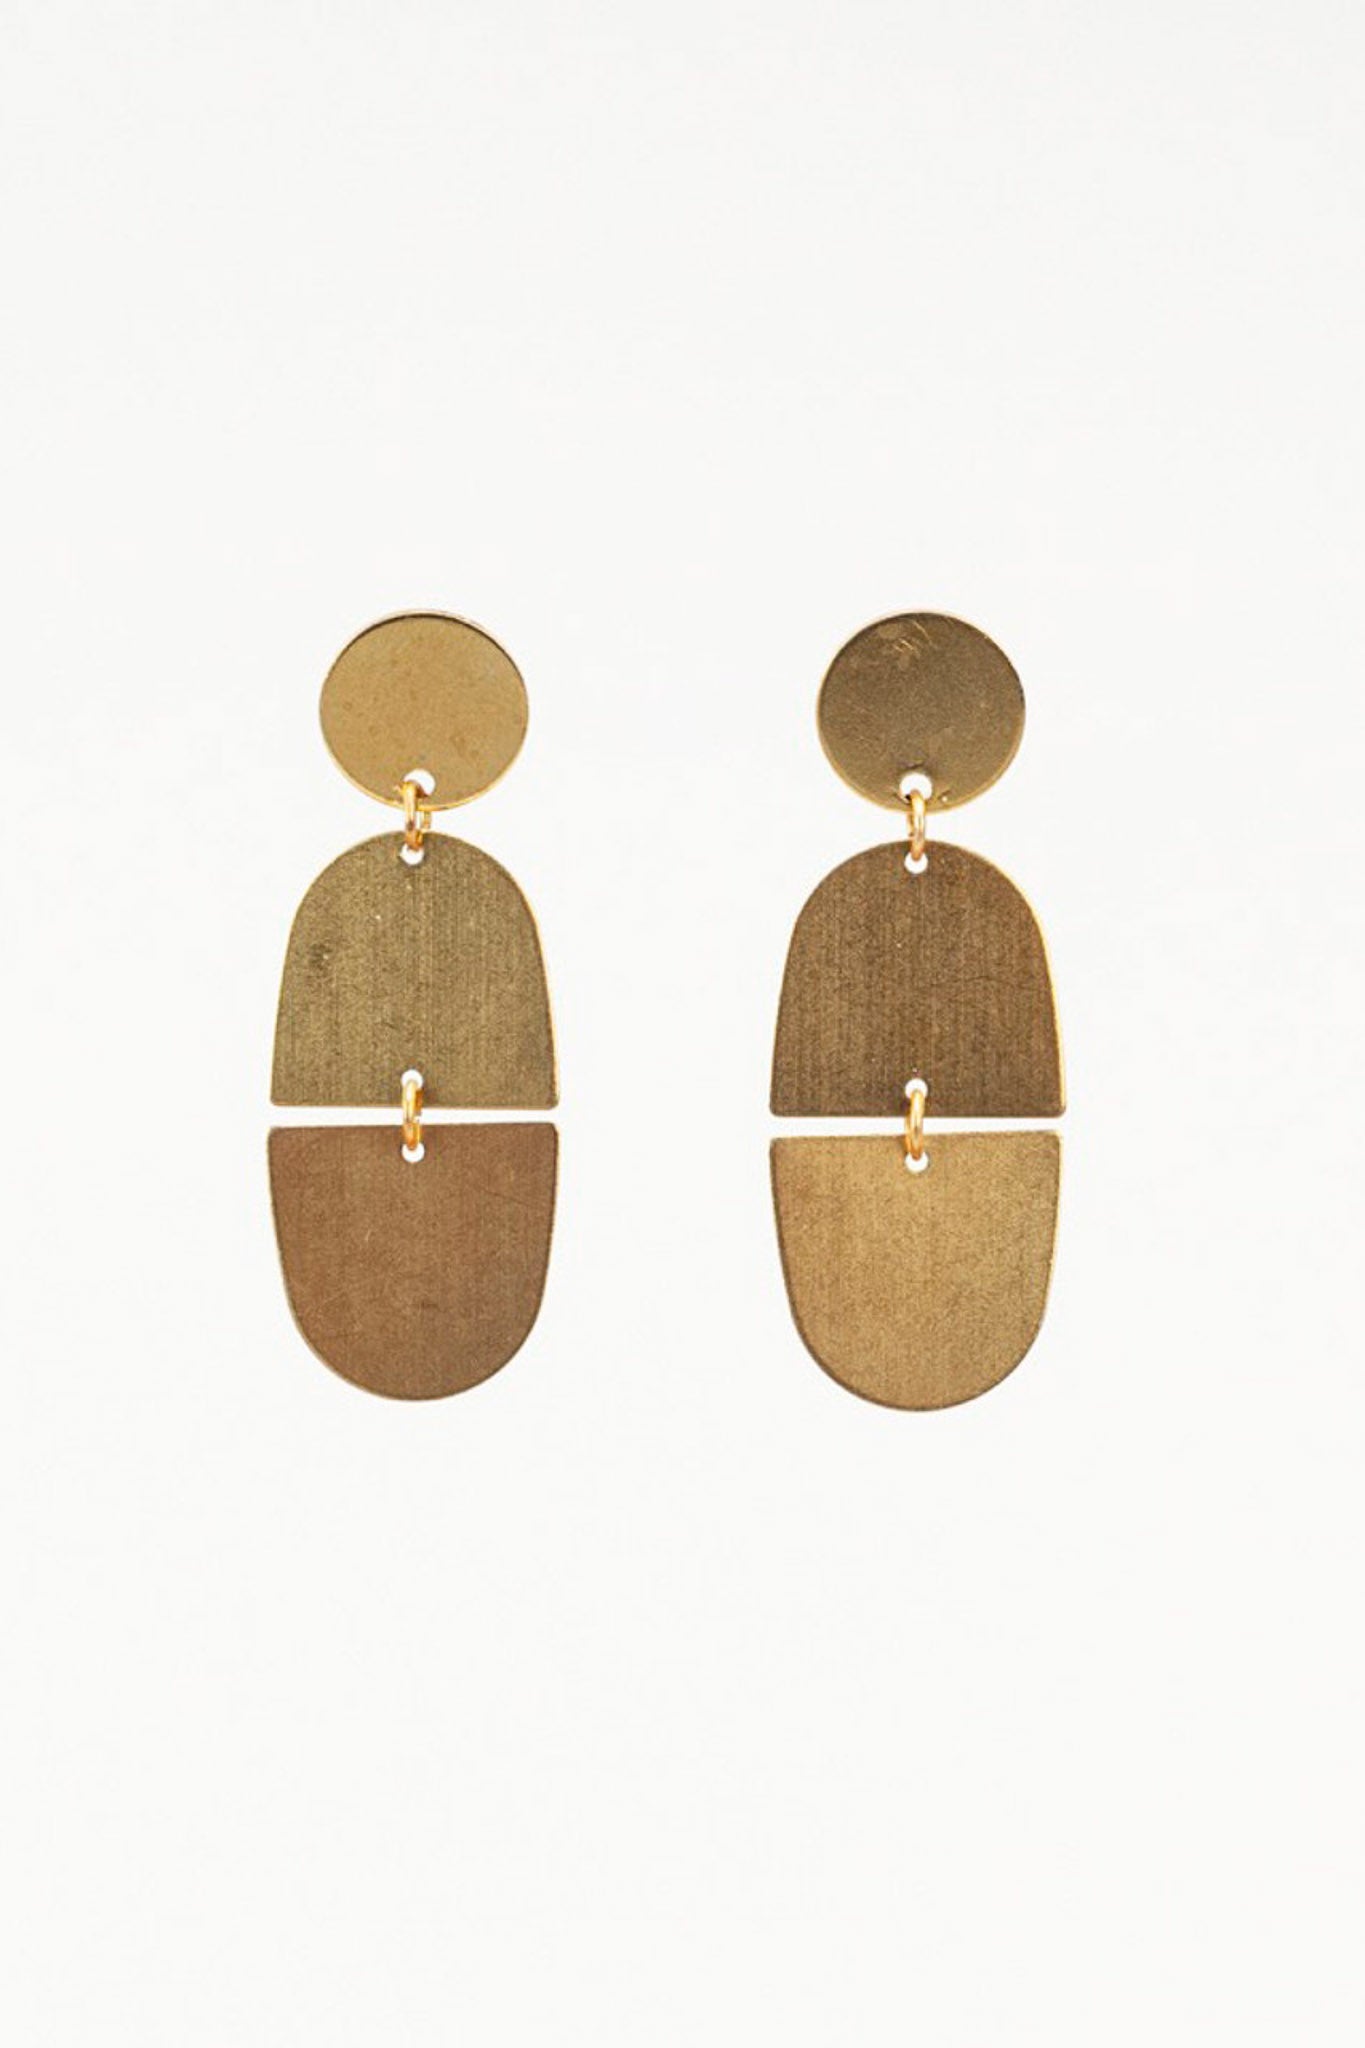 Beaded Fringe Earrings in Roca – Fair + Simple